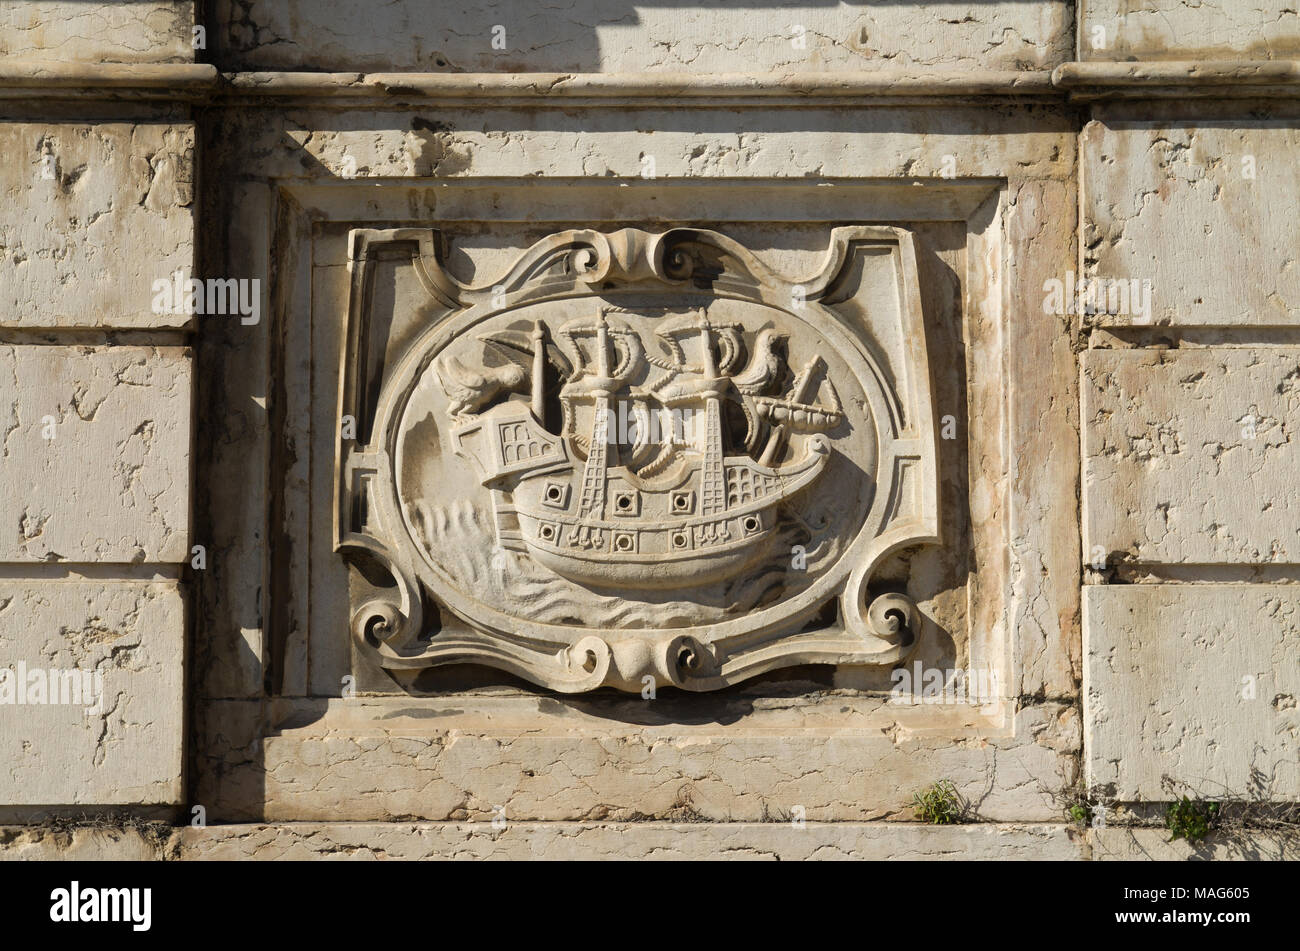 Panel derecho bajo relieve de los Reyes fuente monumento (Chafariz Del Rei) retrata a un buque. Los reyes fuente fue construida en el siglo XIII y reconstruido i Foto de stock